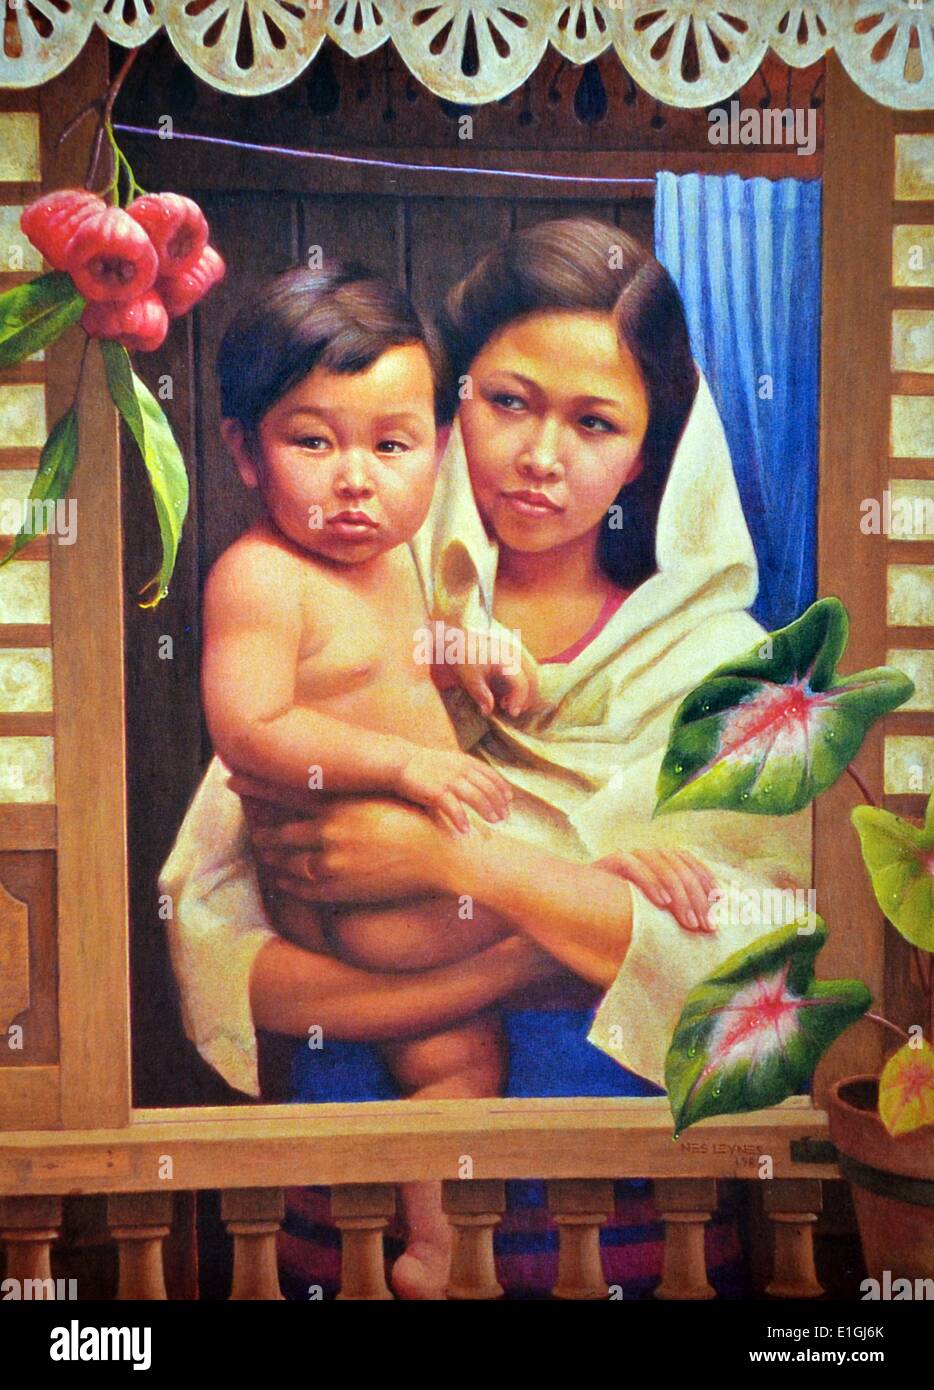 Nestor Leynes, Mère et enfant, 1989, huile sur toile. Banque D'Images